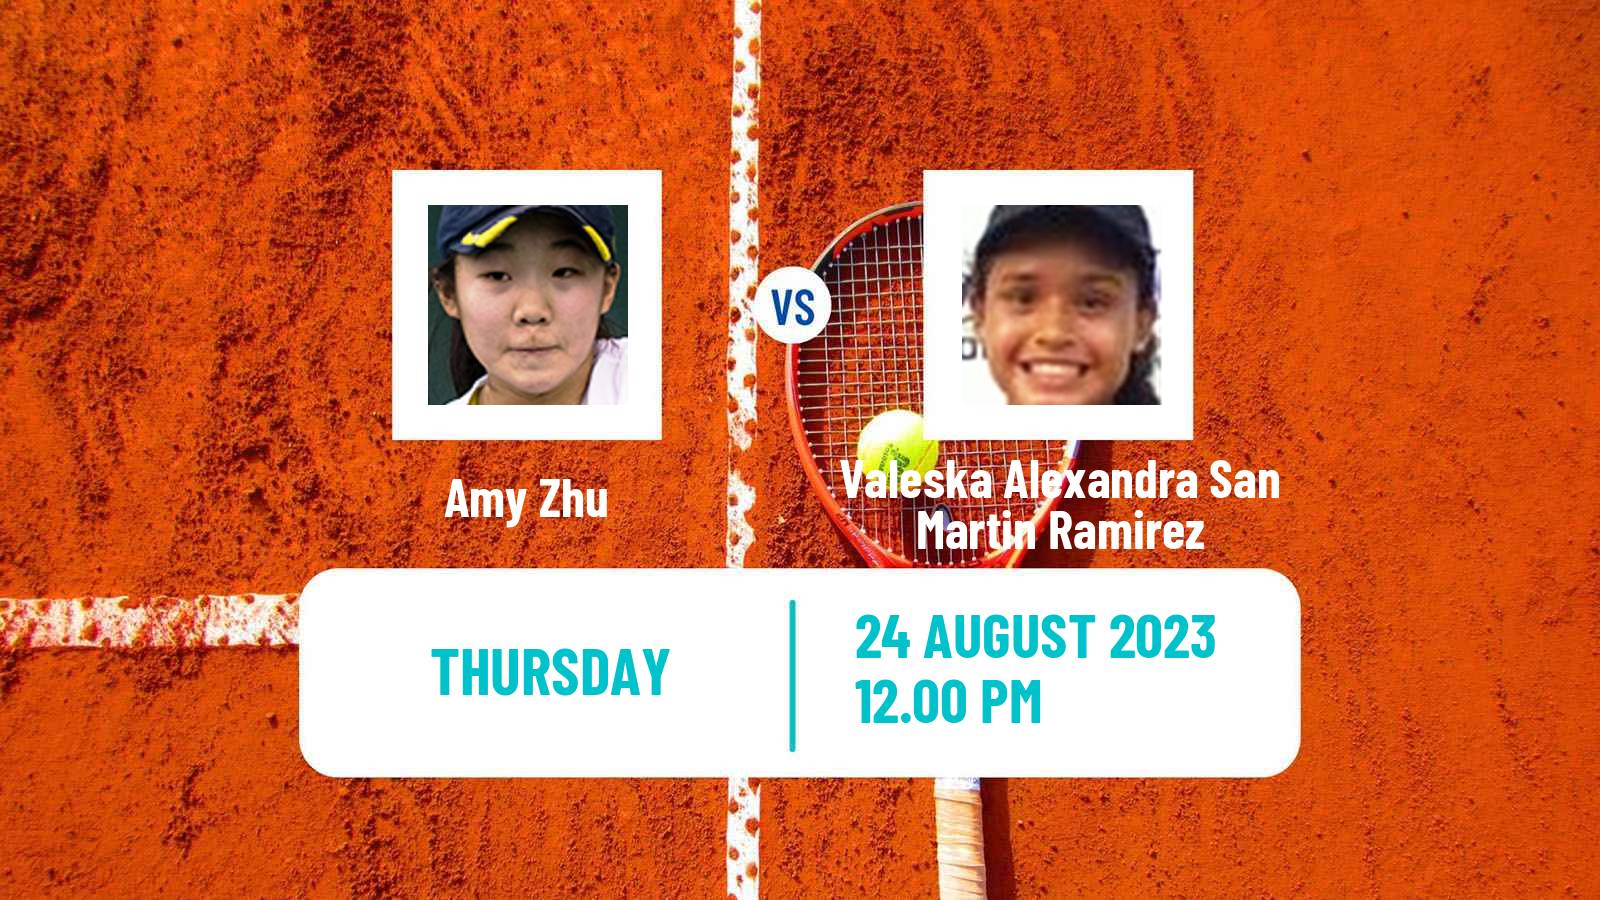 Tennis ITF W15 Lima Women Amy Zhu - Valeska Alexandra San Martin Ramirez